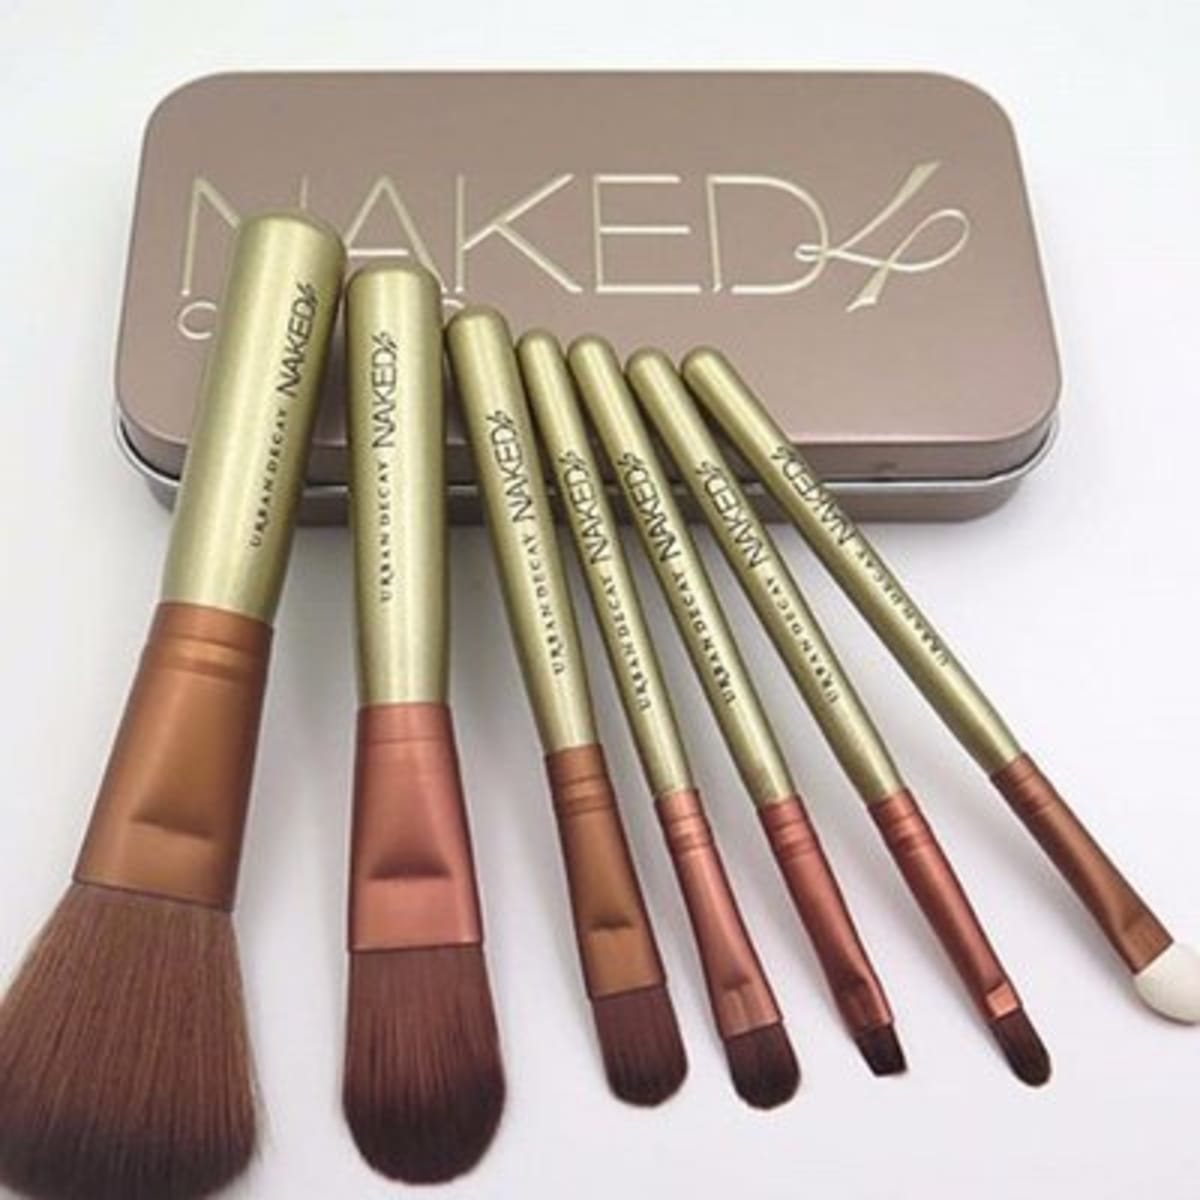 Naked 4 Makeup Brush - 7 Piece Set